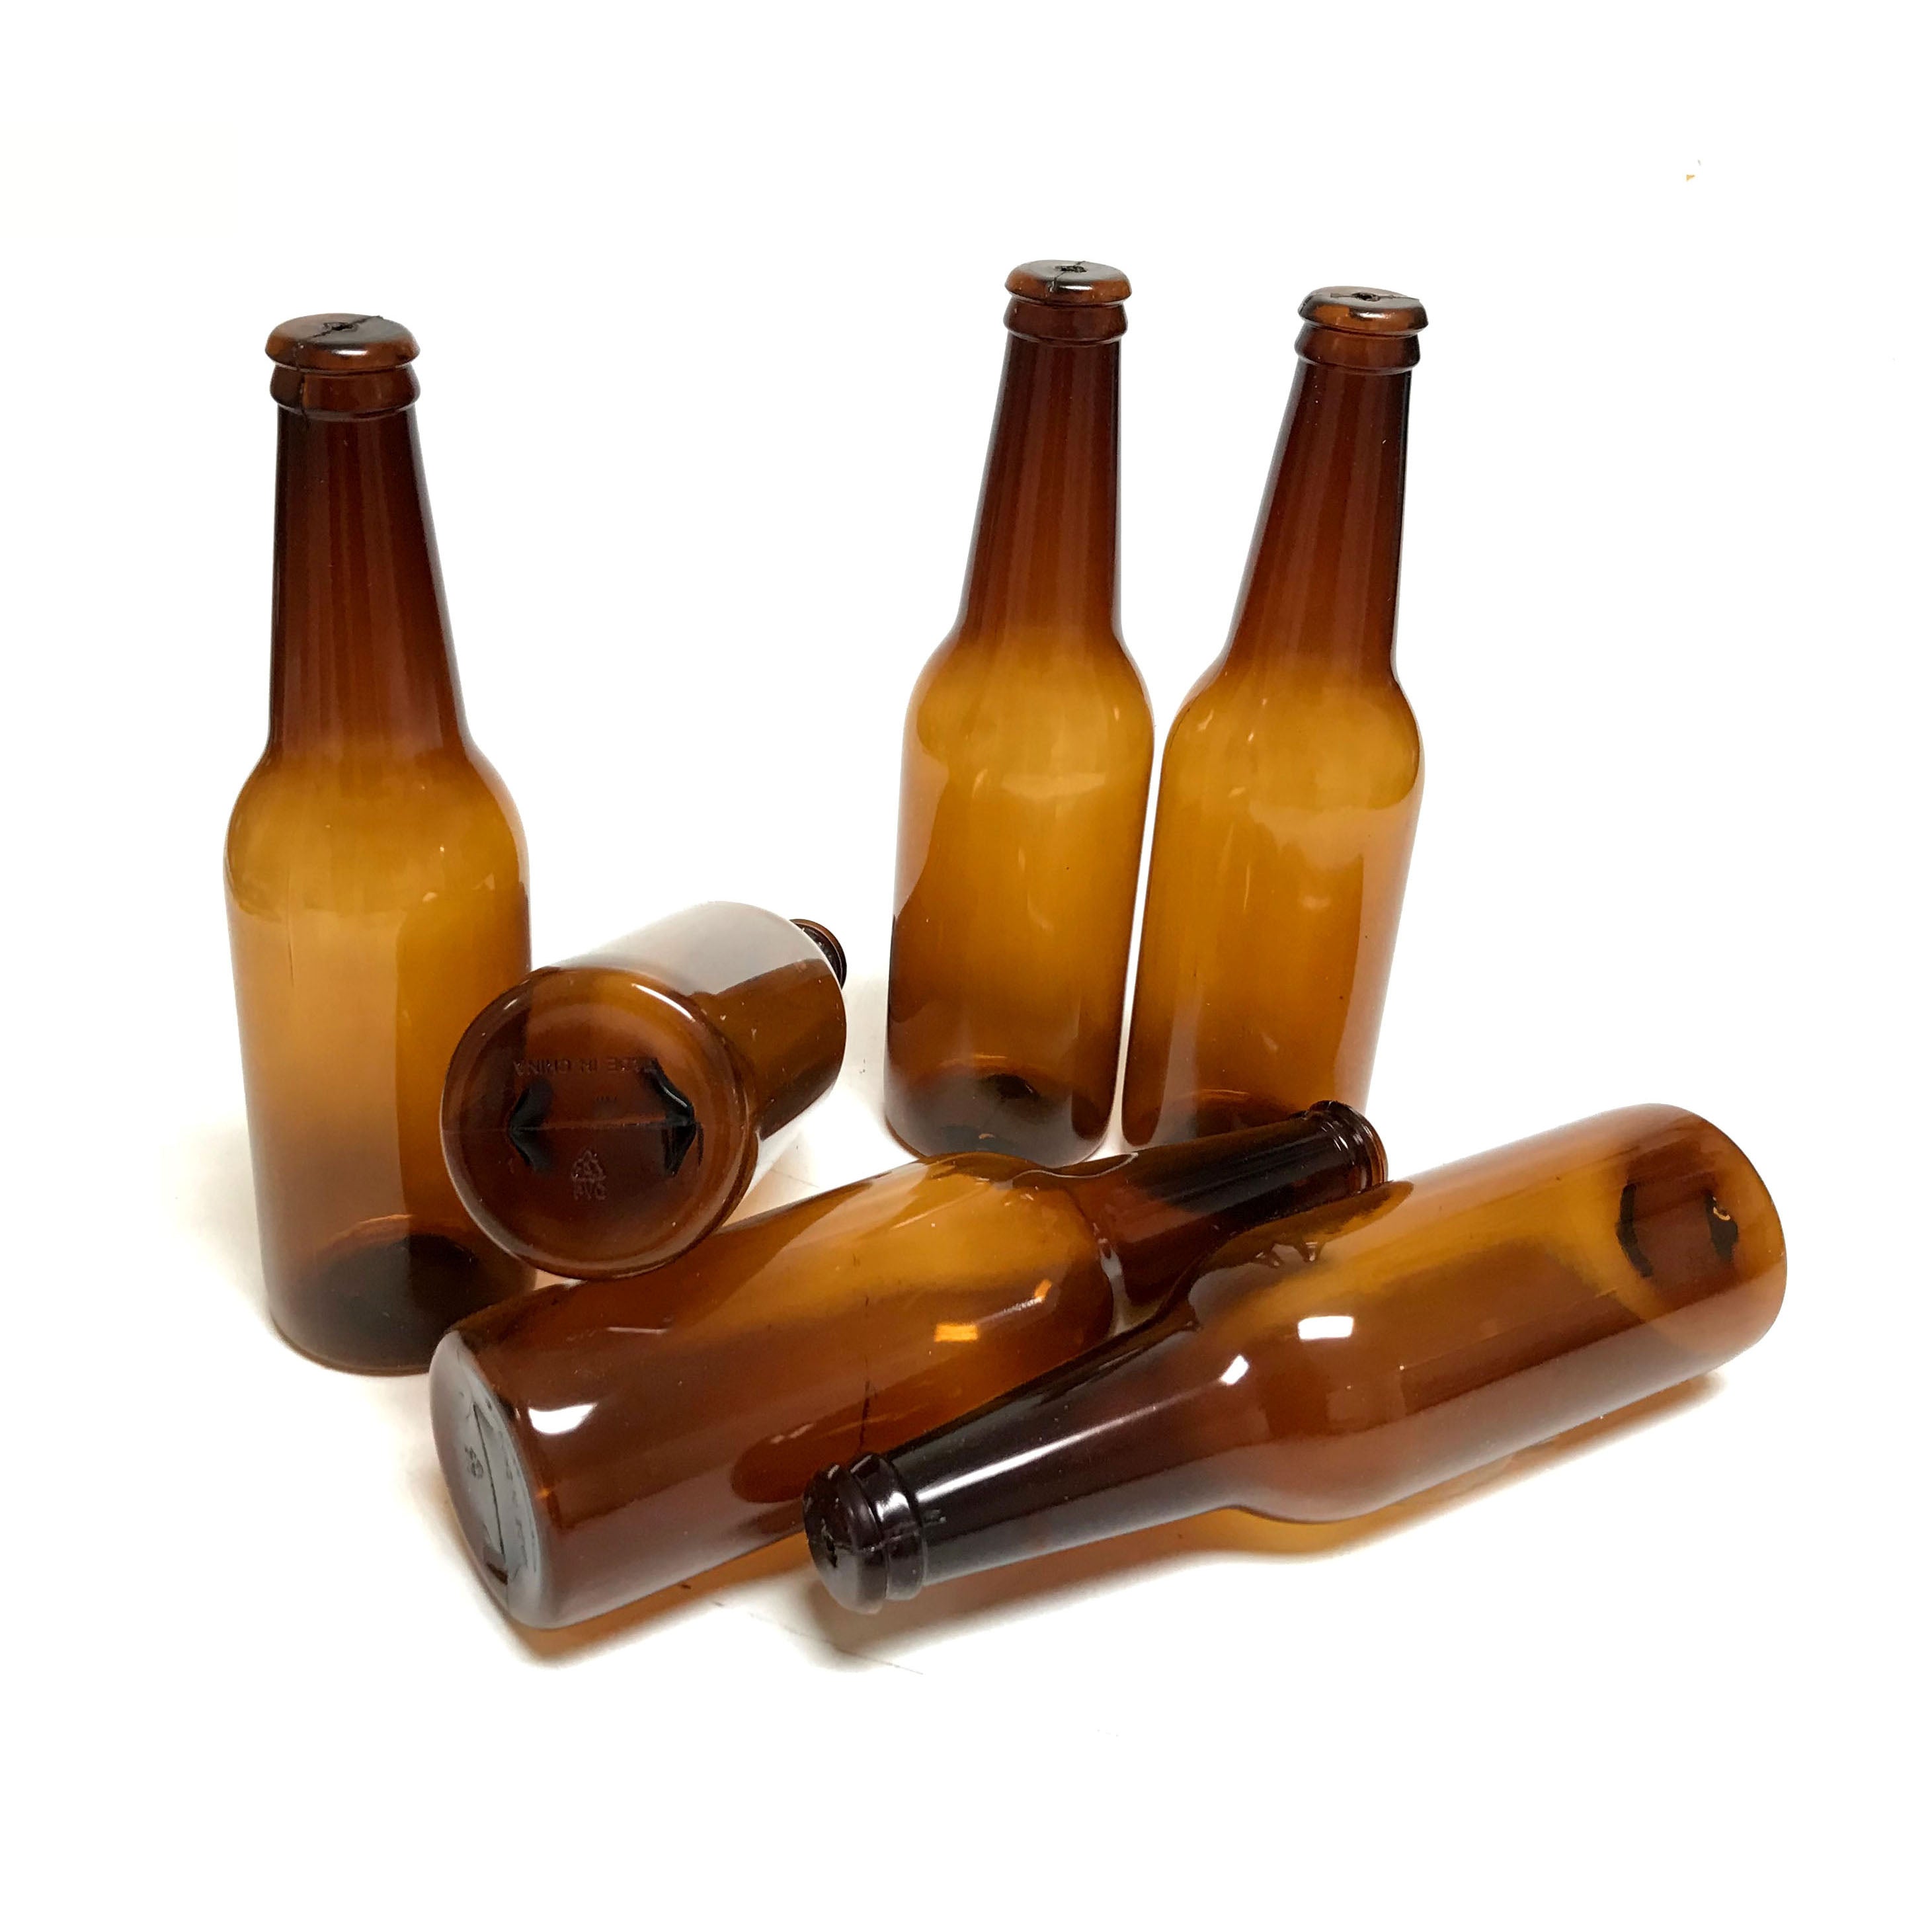 Plastic PVC Lightweight Break Resistant Beer Bottle Stunt Prop - AMBER BROWN translucent